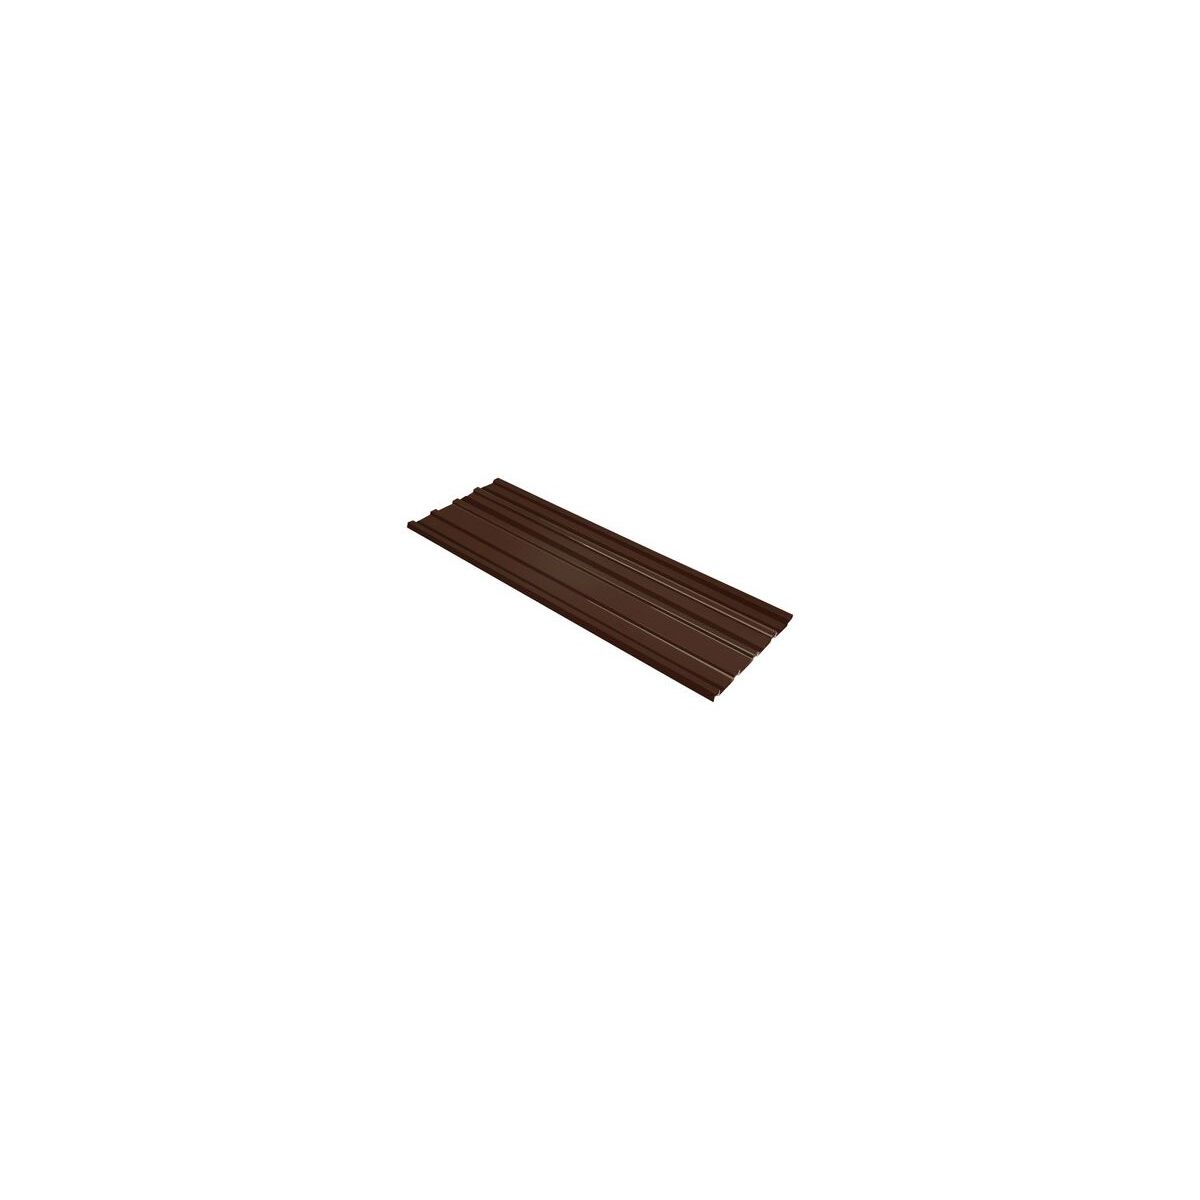 Tôle de toiture acier galvanisé - Ral 8019 (brun chocolat) - Longueur 5m